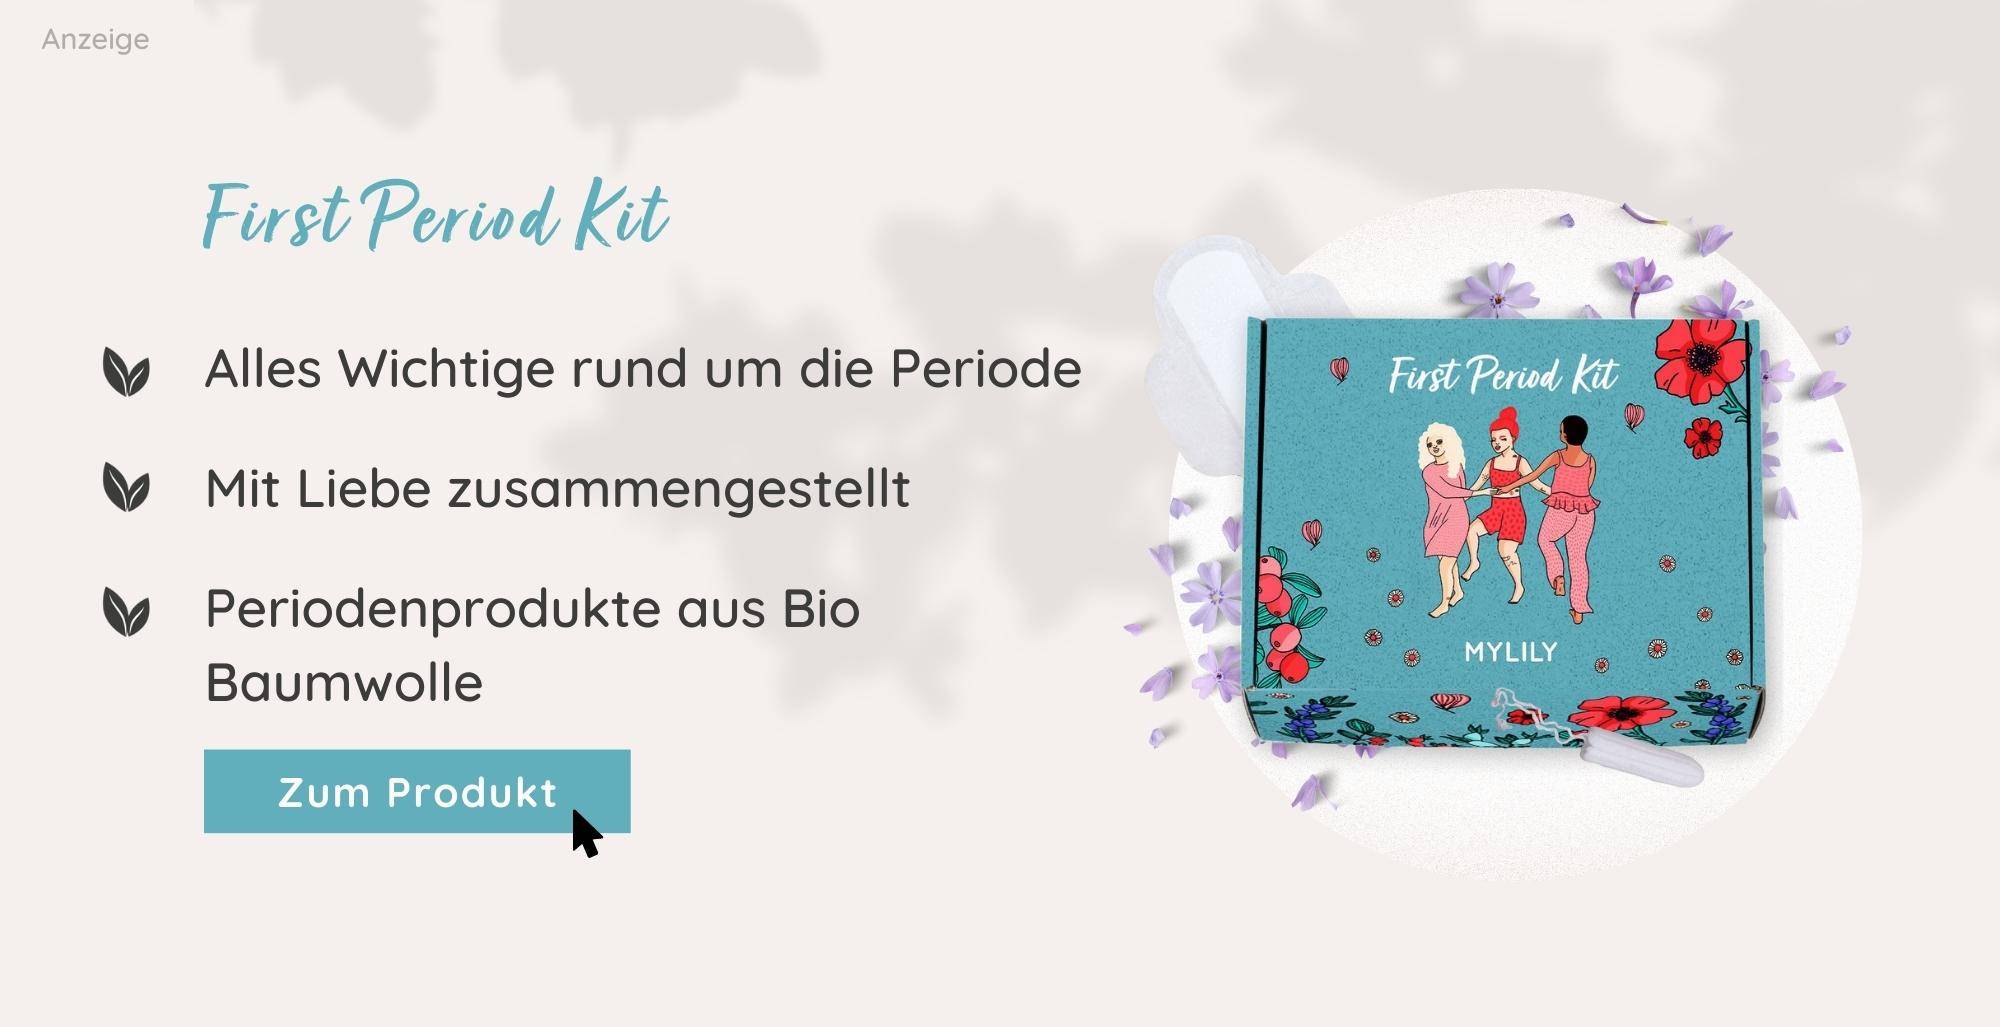 First Period Kit MYLILY | Erste Periode Box für Mädchen | Menstruationsprodukte von MYLILY 